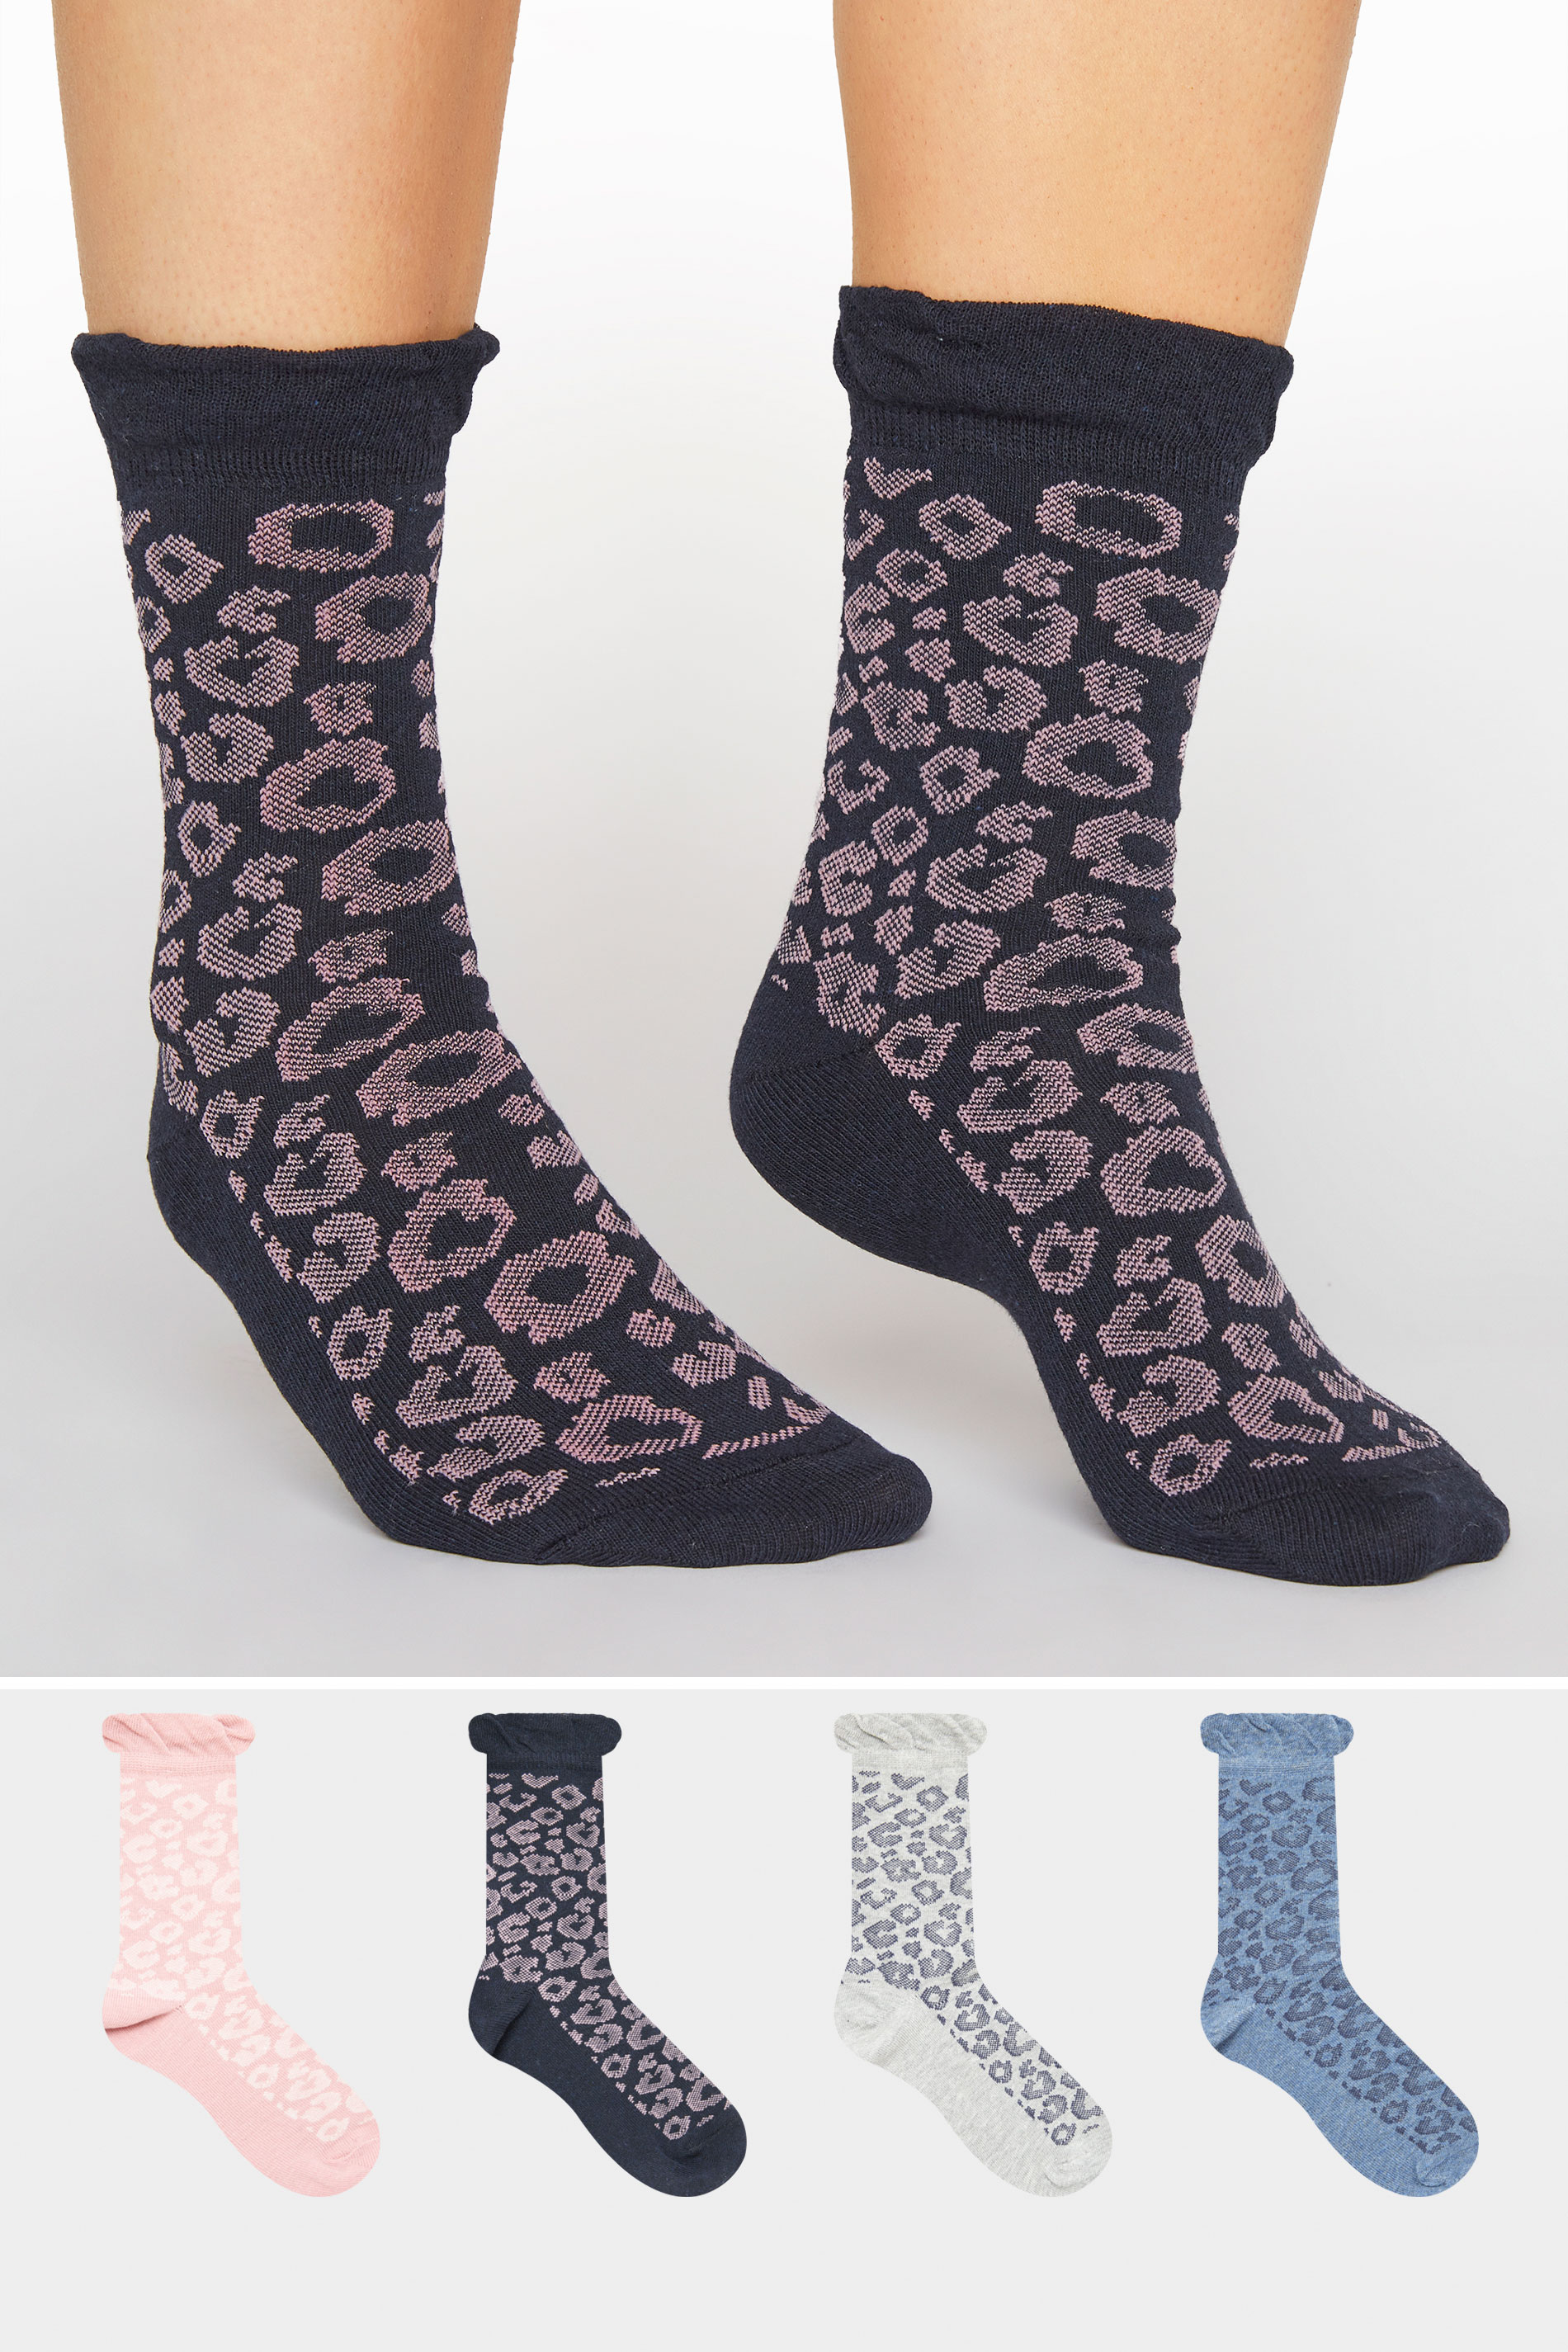 4 PACK Multi Dotty Animal Ankle Socks_split.jpg